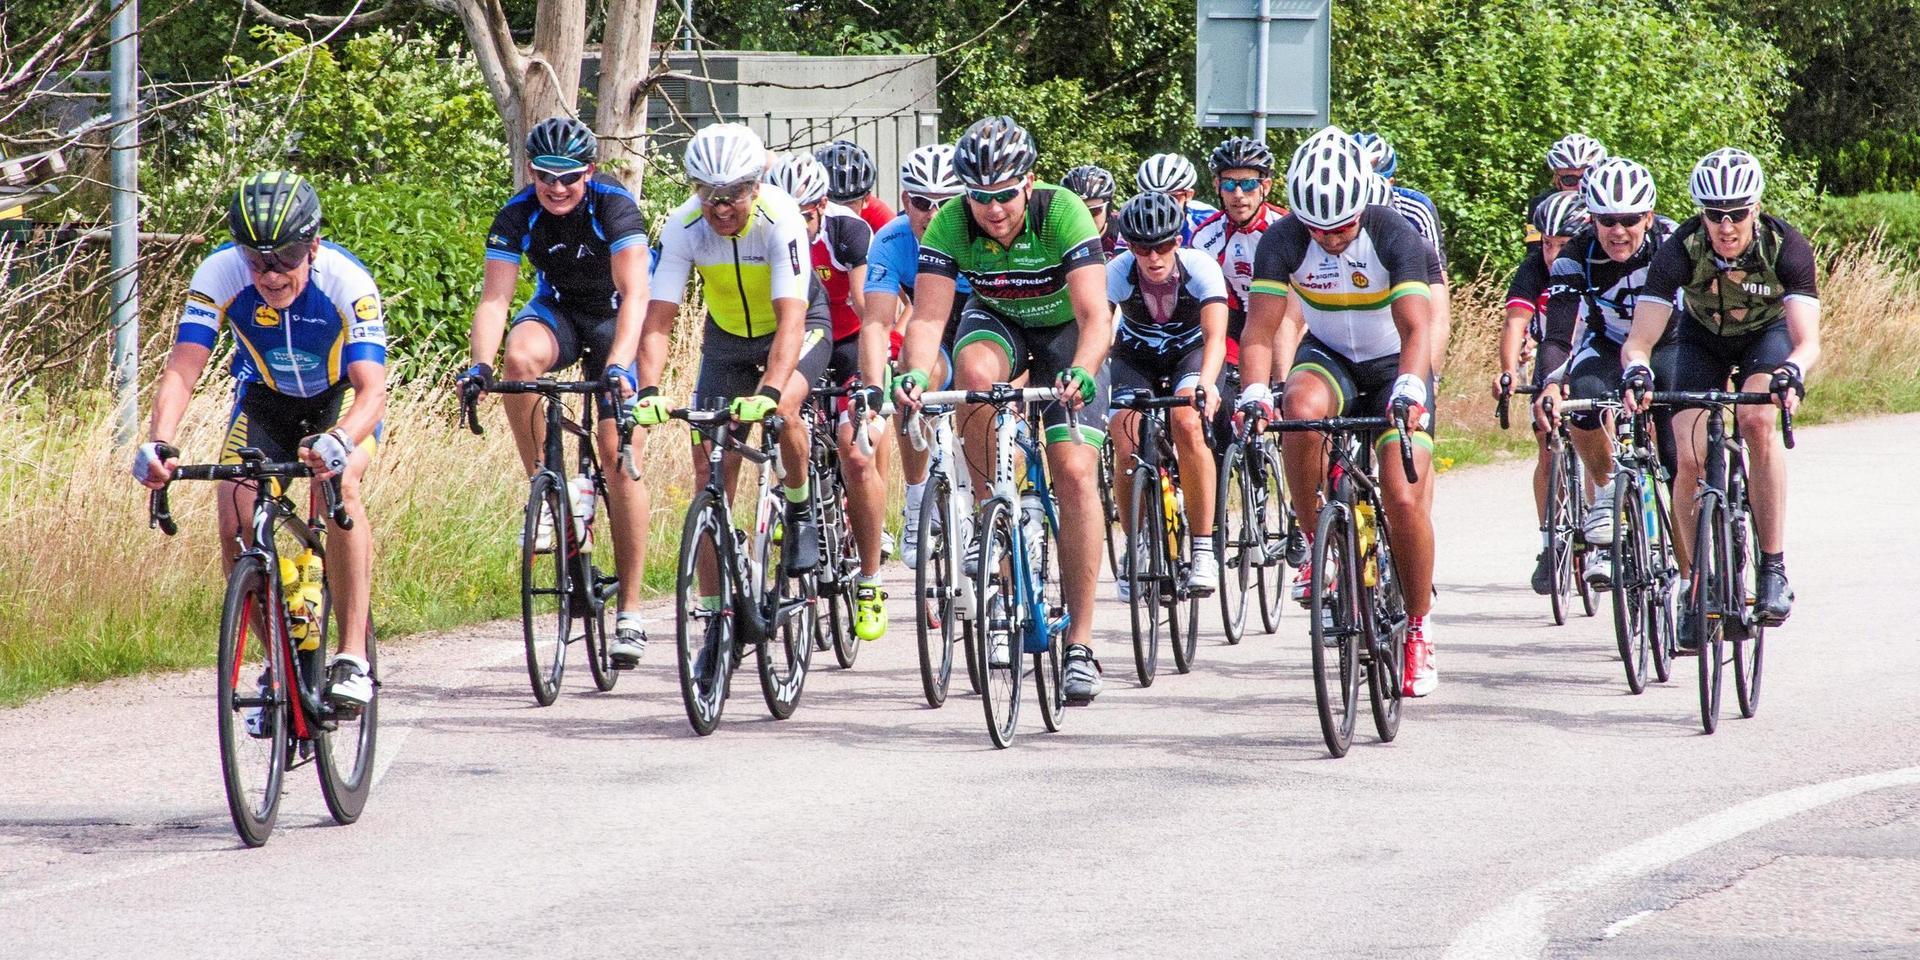 Motionslopp på cykel är en sommartradition i Laholm. Föreningen Laholmscyklisten vill arrangera loppet i år efter ett års uppehåll.